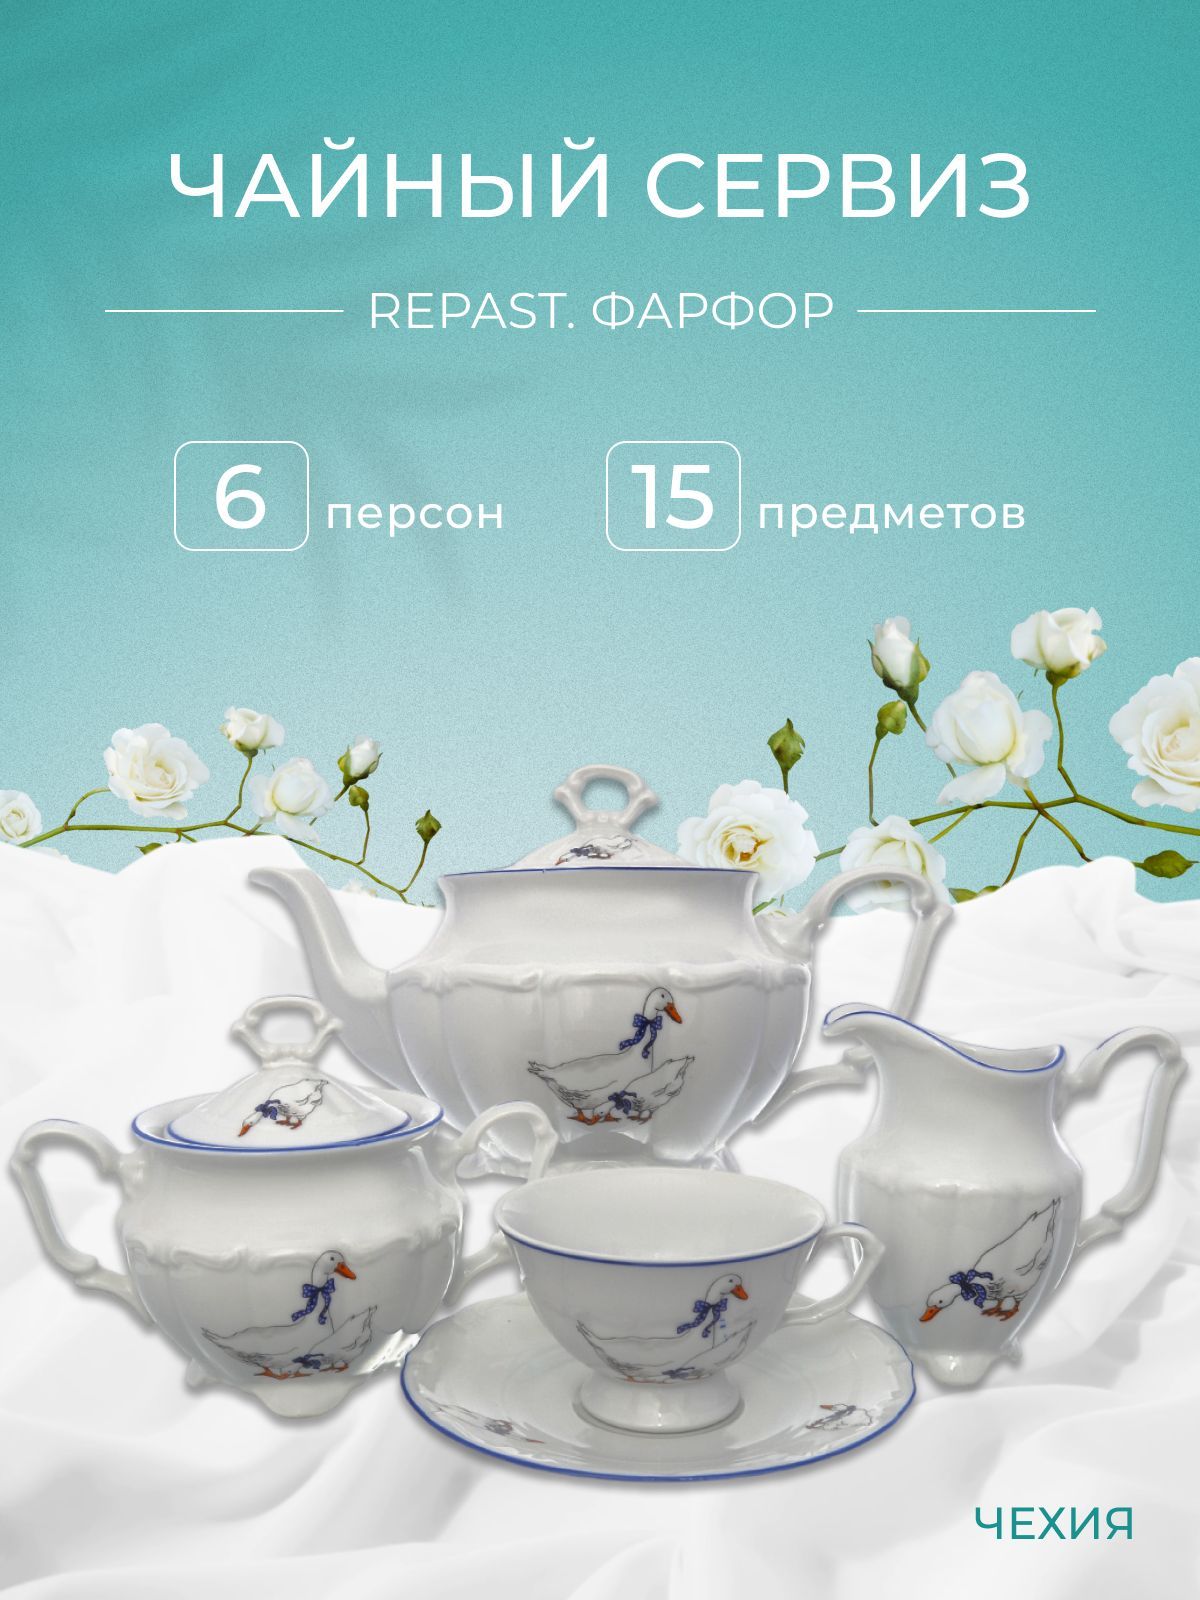 Чайный набор Гуси Repast классическая чашка (15 предметов на 6 персон)